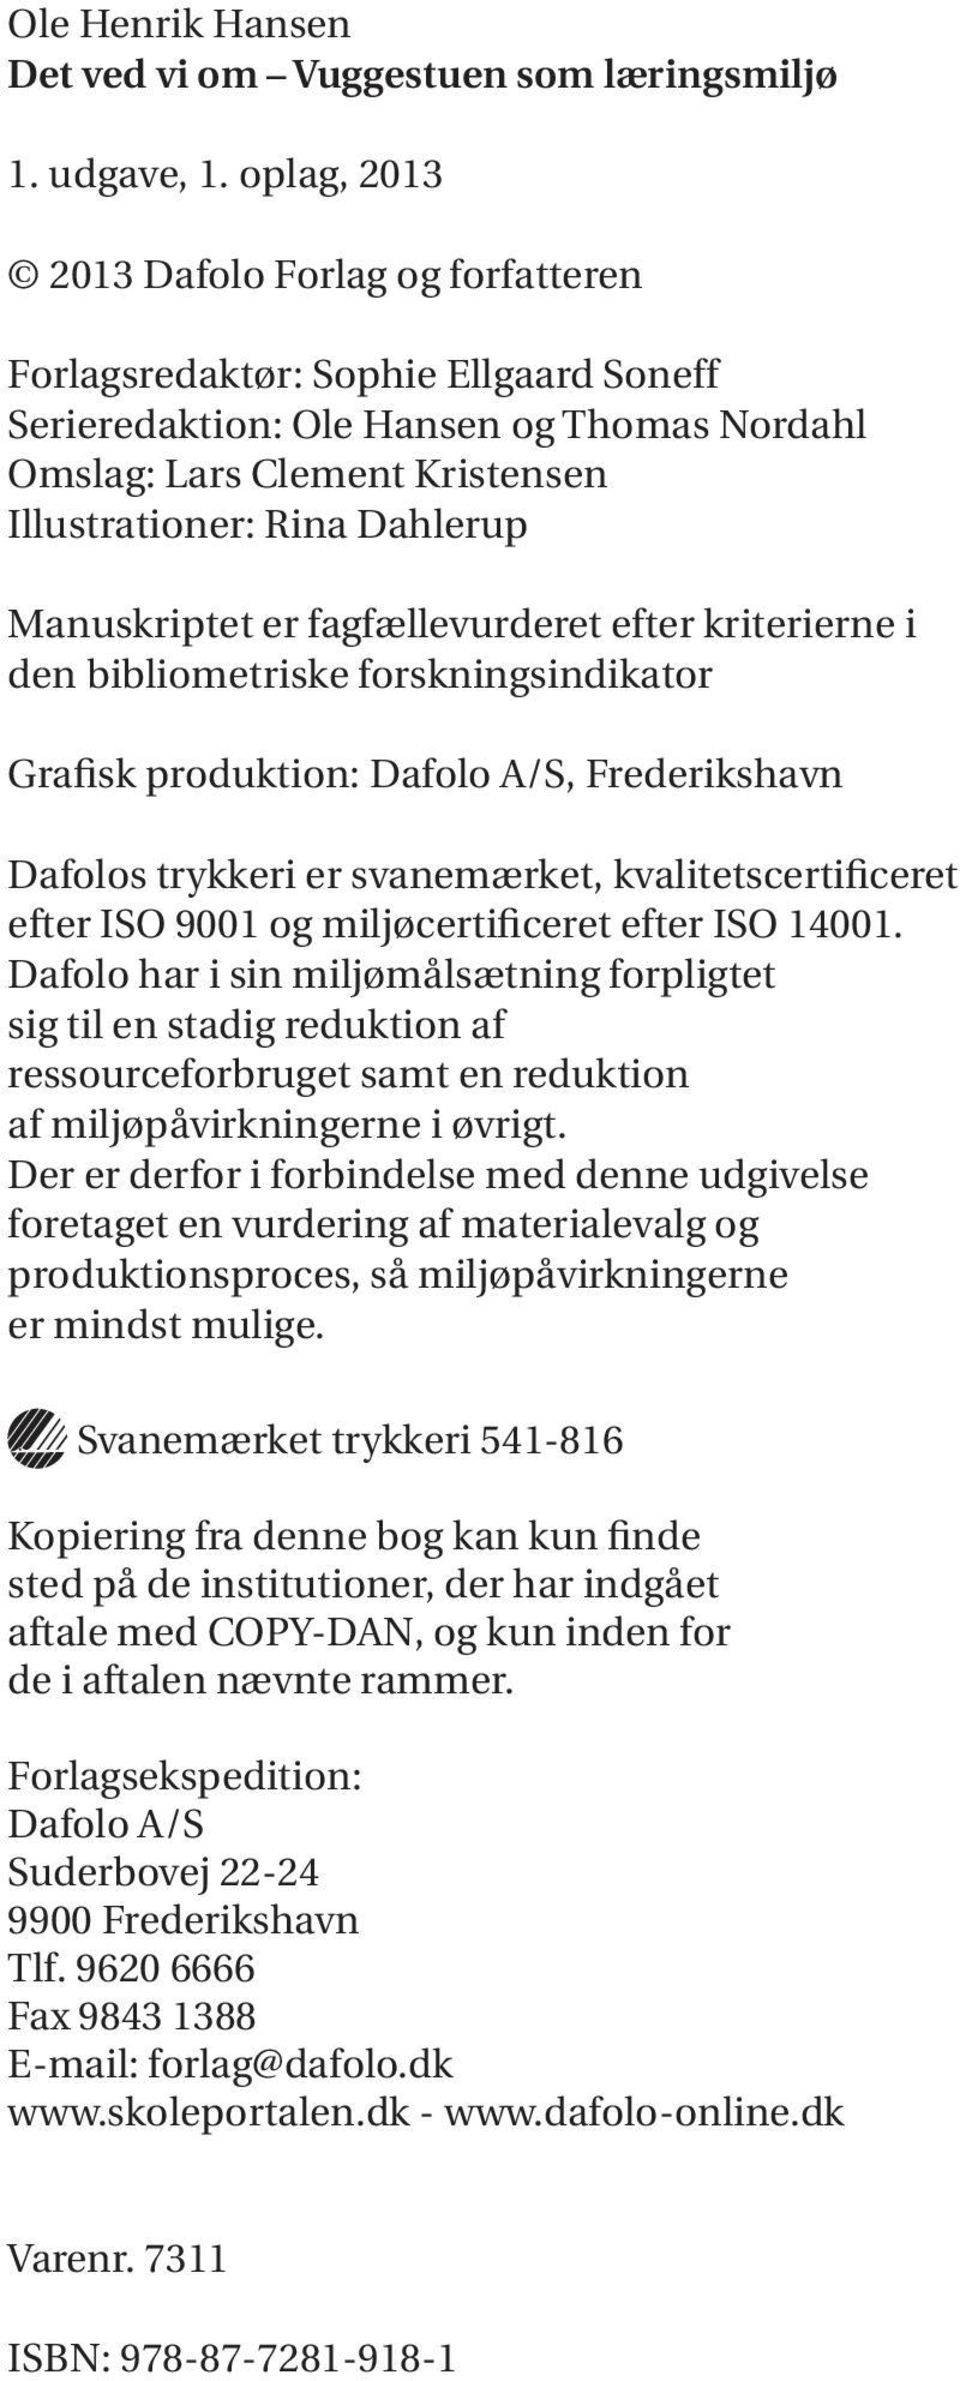 Manuskriptet er fagfællevurderet efter kriterierne i den bibliometriske forskningsindikator Grafisk produktion: Dafolo A/S, Frederikshavn Dafolos trykkeri er svanemærket, kvalitetscertificeret efter